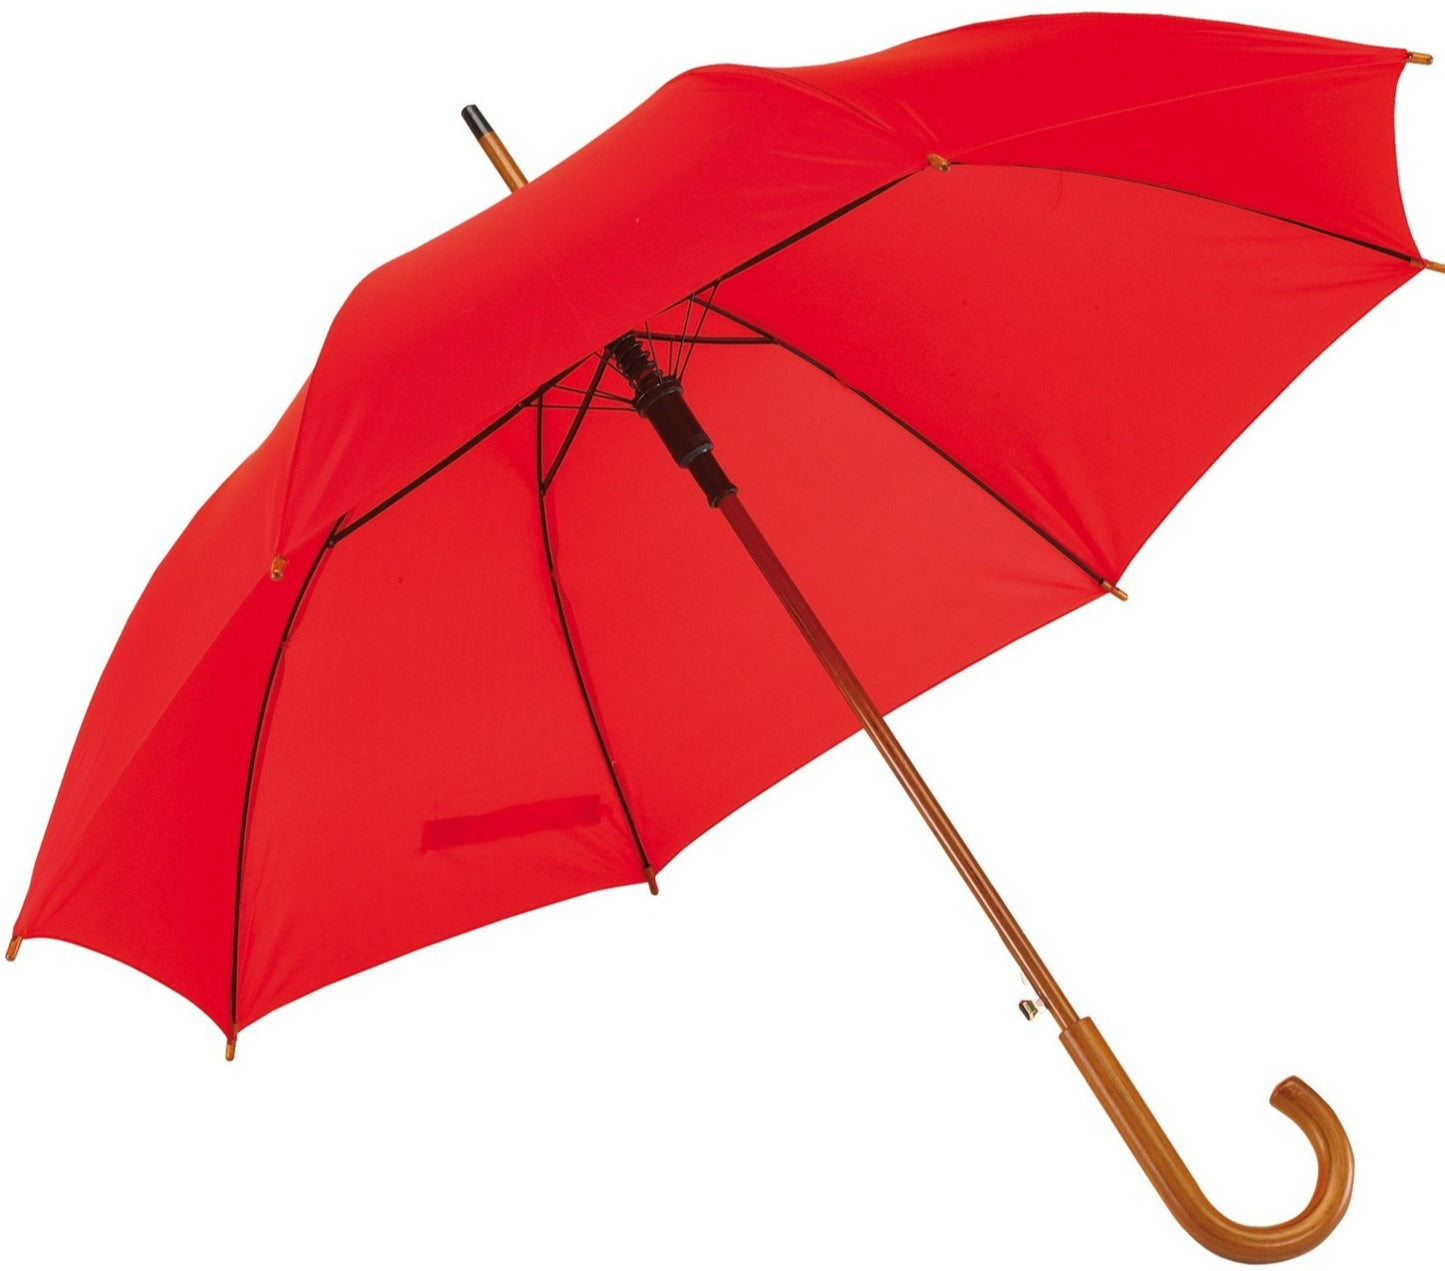 Κόκκινη, Ομπρέλα Βροχής, Αυτόματη, με ξύλινη κυρτή λαβή (κωδικός 01-03-0328).